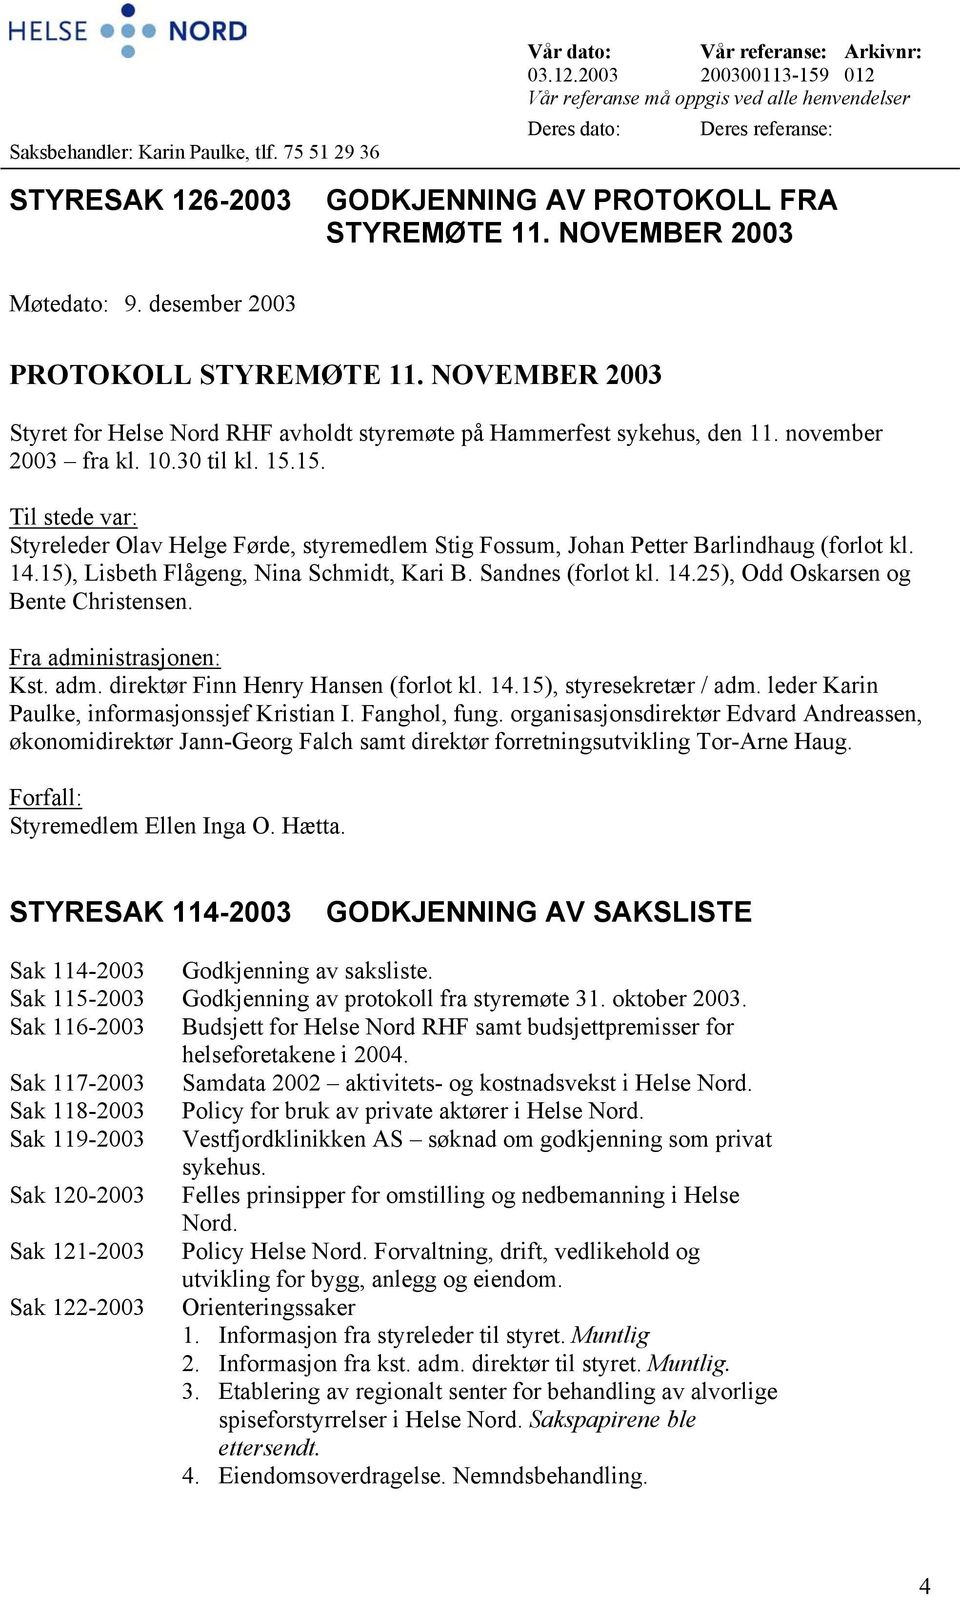 desember 2003 PROTOKOLL STYREMØTE 11. NOVEMBER 2003 Styret for Helse Nord RHF avholdt styremøte på Hammerfest sykehus, den 11. november 2003 fra kl. 10.30 til kl. 15.